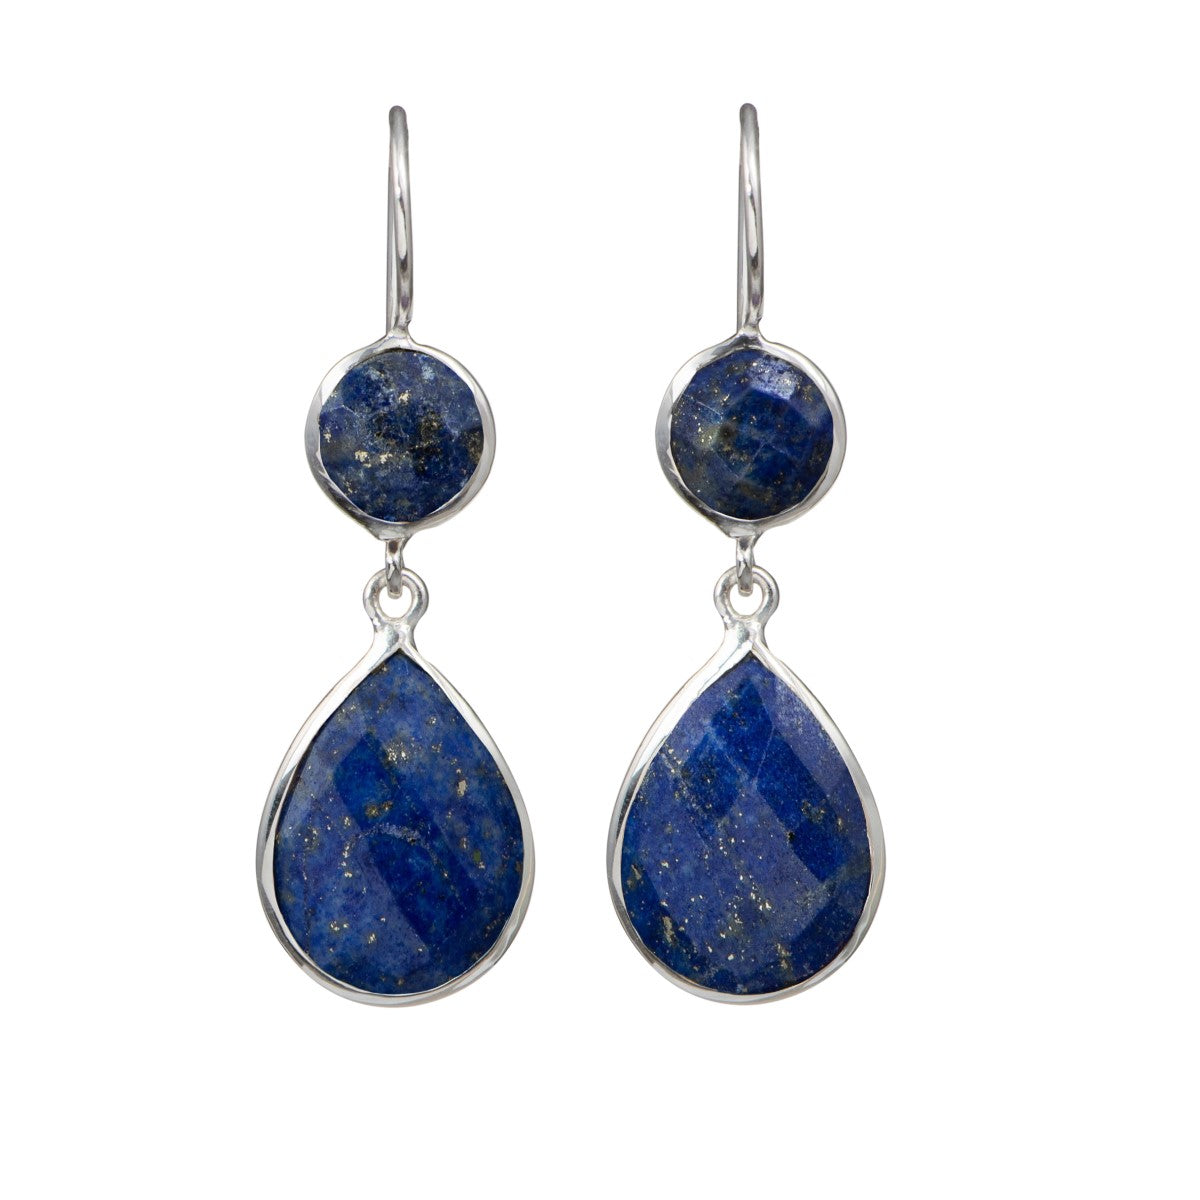 Lapis Lazuli Gemstone Two Stone Earrings in Sterling Silver - Teardrop